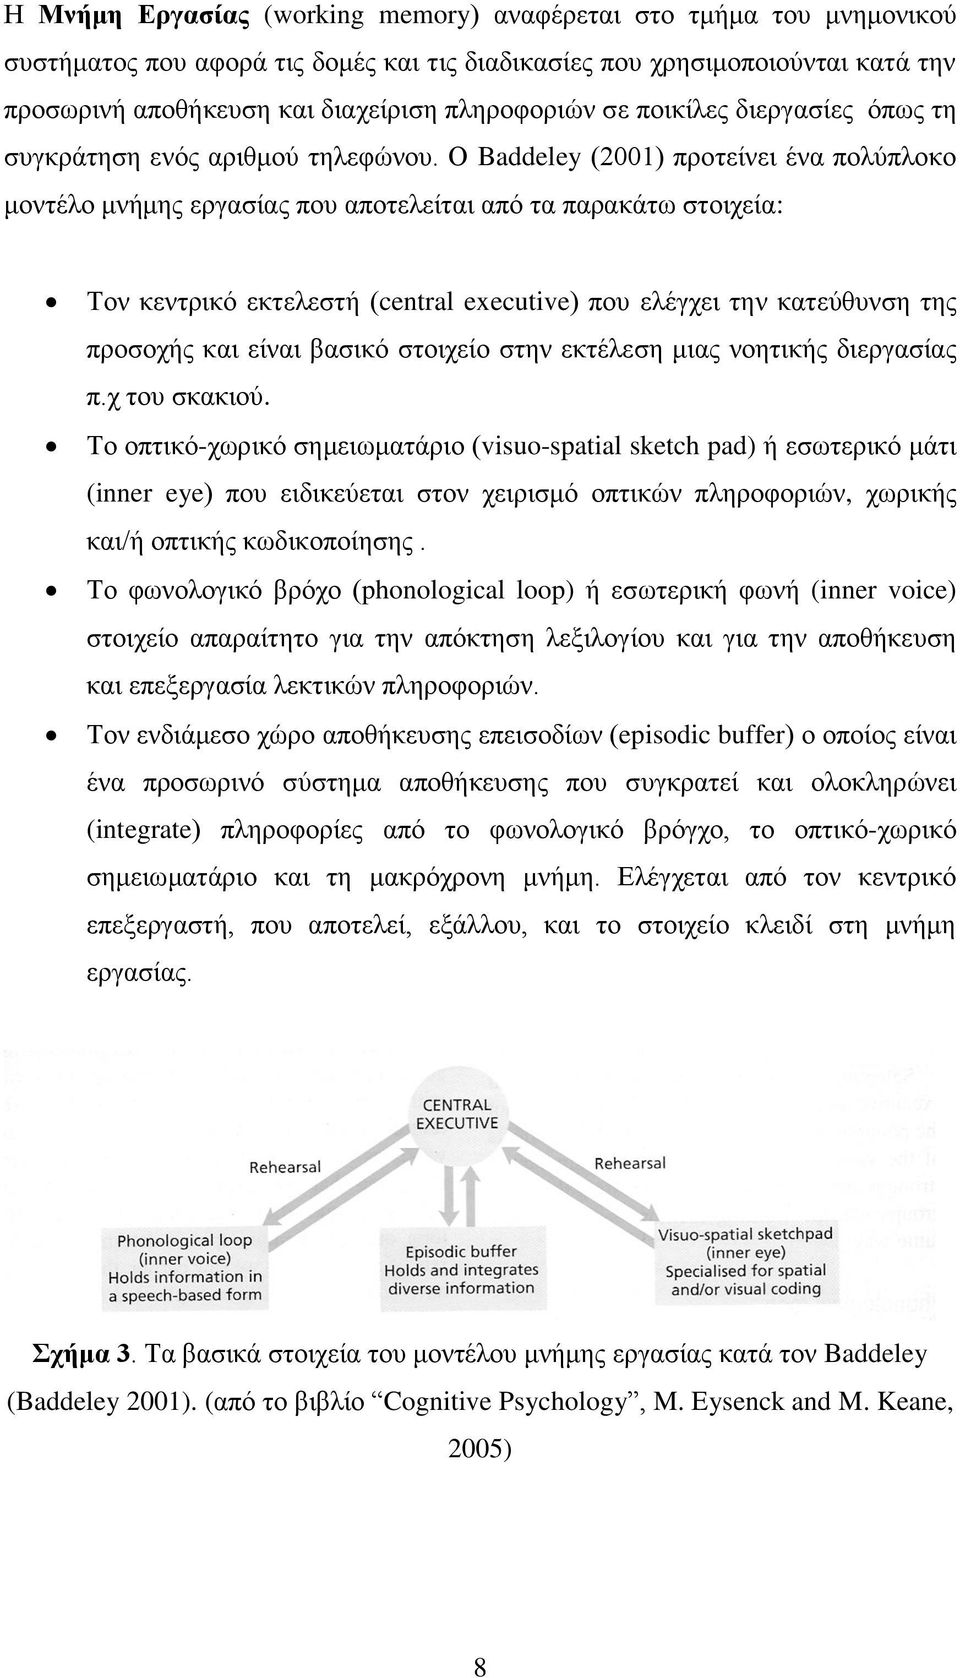 Ο Baddeley (2001) προτείνει ένα πολύπλοκο μοντέλο μνήμης εργασίας που αποτελείται από τα παρακάτω στοιχεία: Τον κεντρικό εκτελεστή (central executive) που ελέγχει την κατεύθυνση της προσοχής και